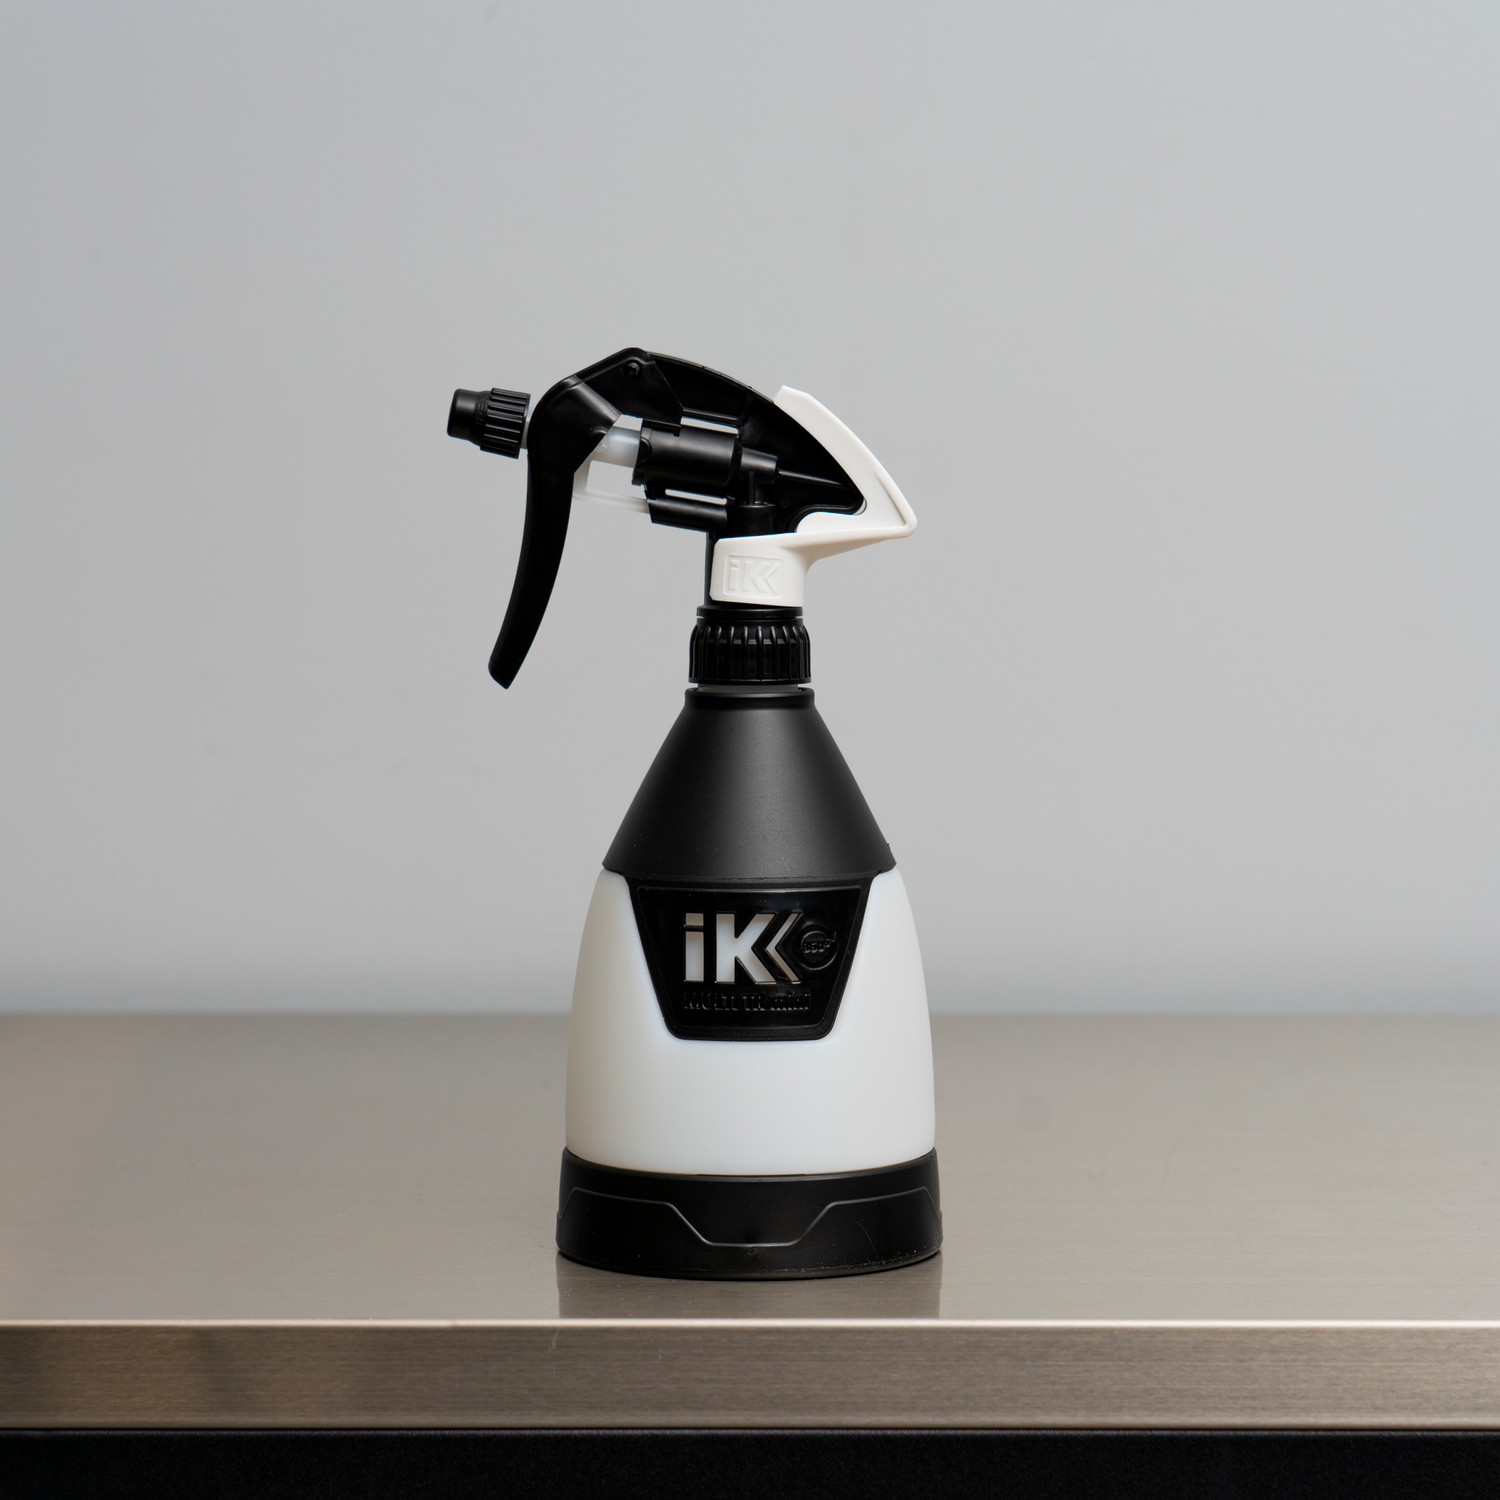 IK Multi Pro 2 Sprayer